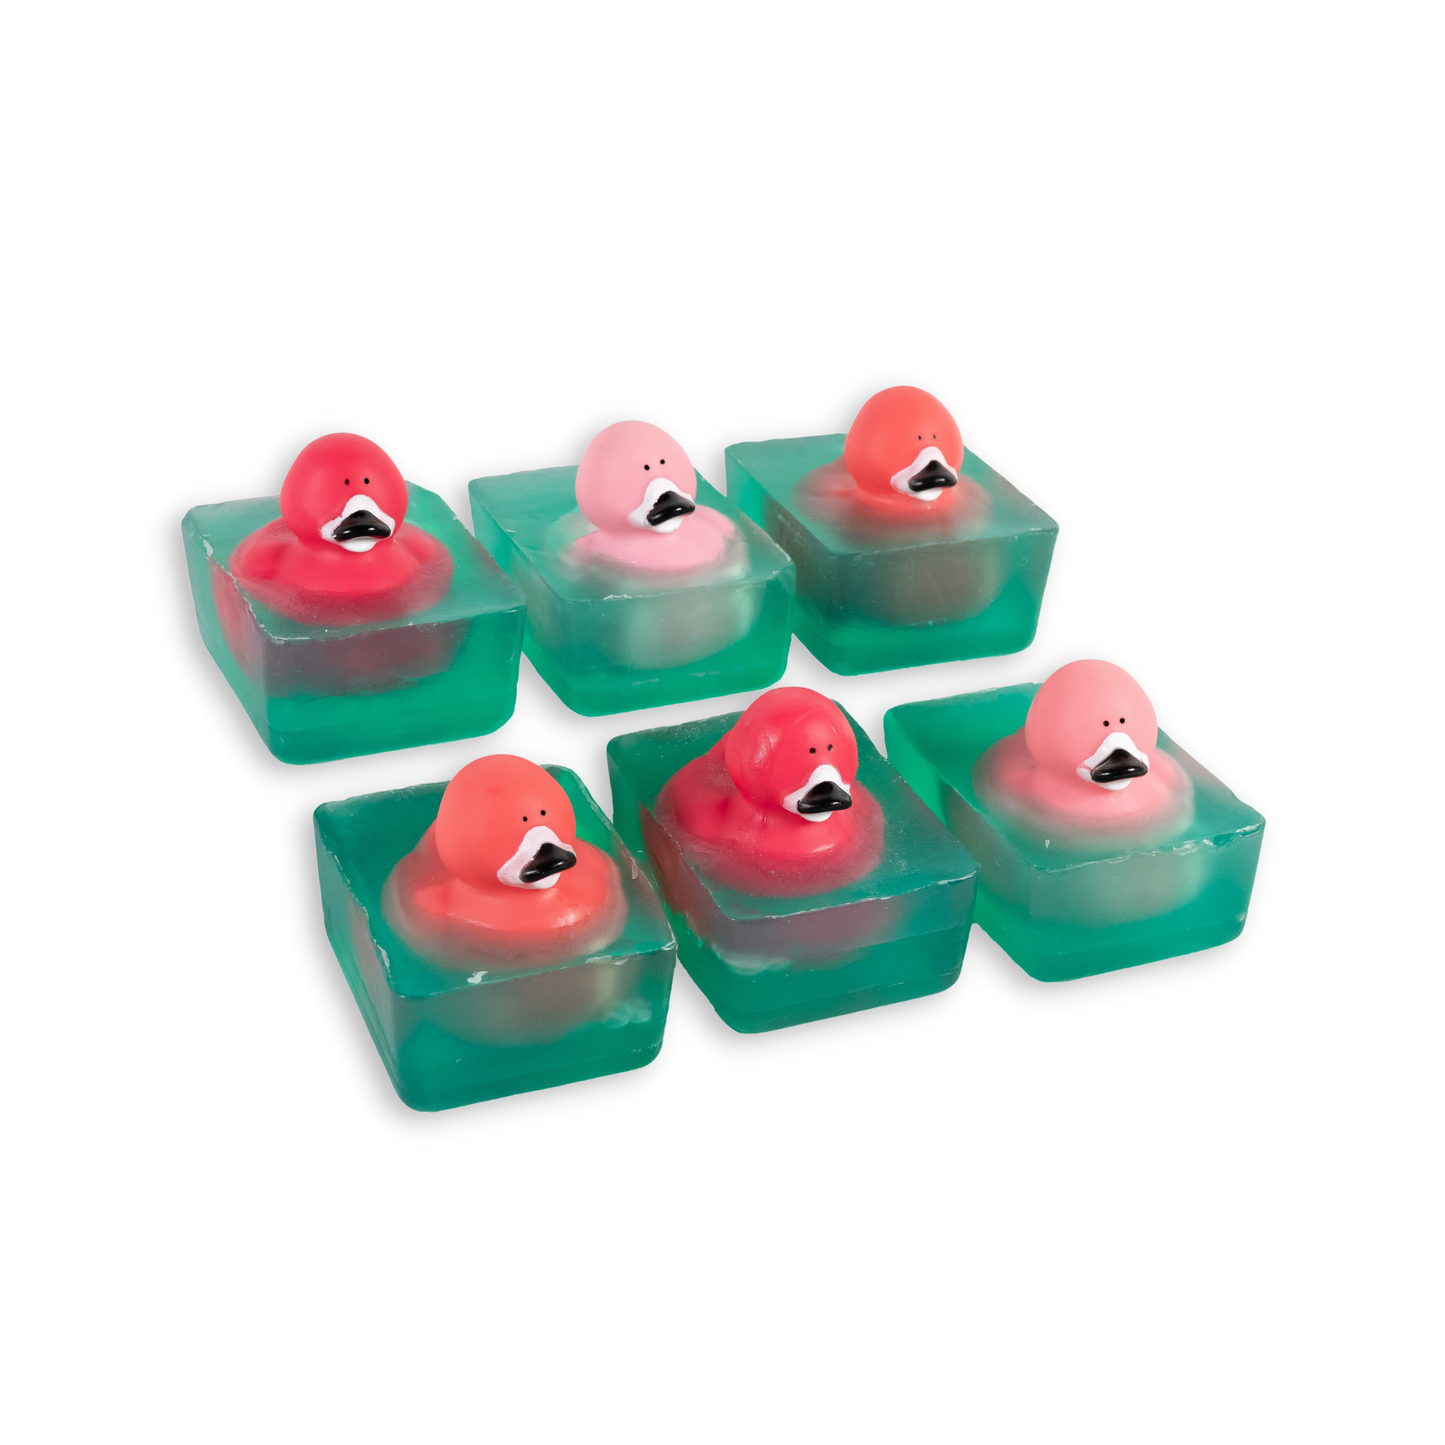 Flamingo Duck Toy Soaps